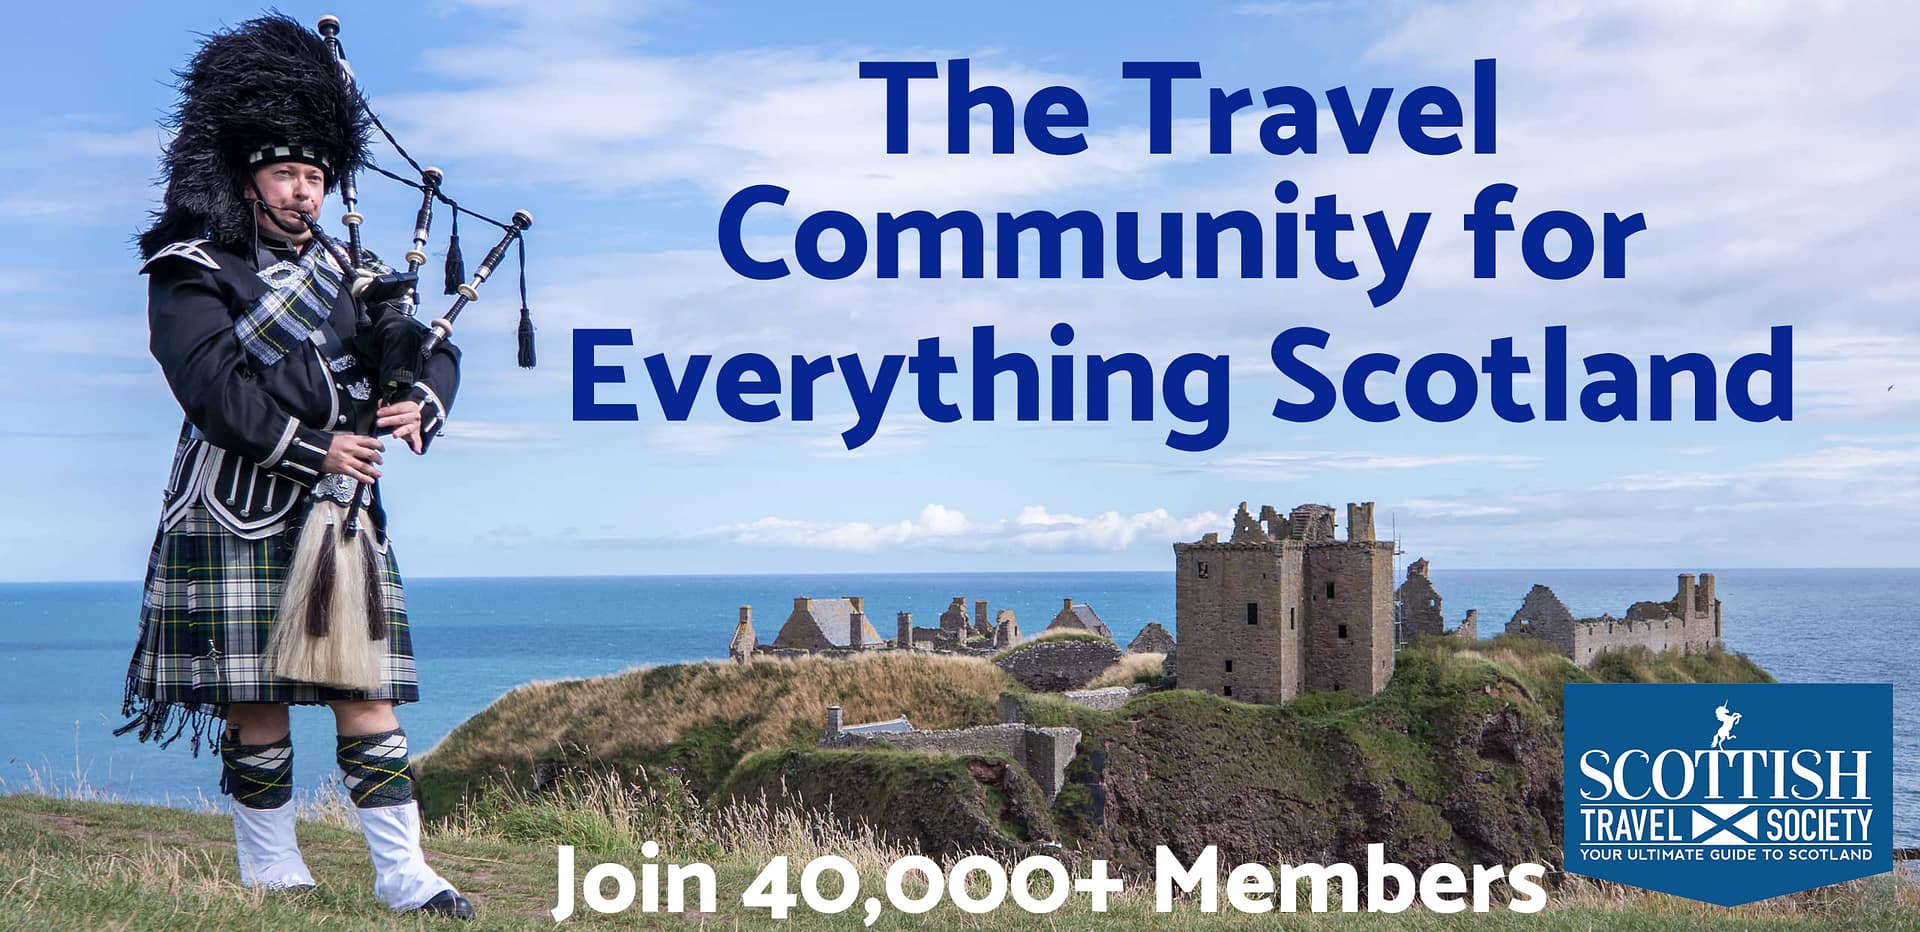 The Ultimate Scottish Travel Community - Scottish Travel Society